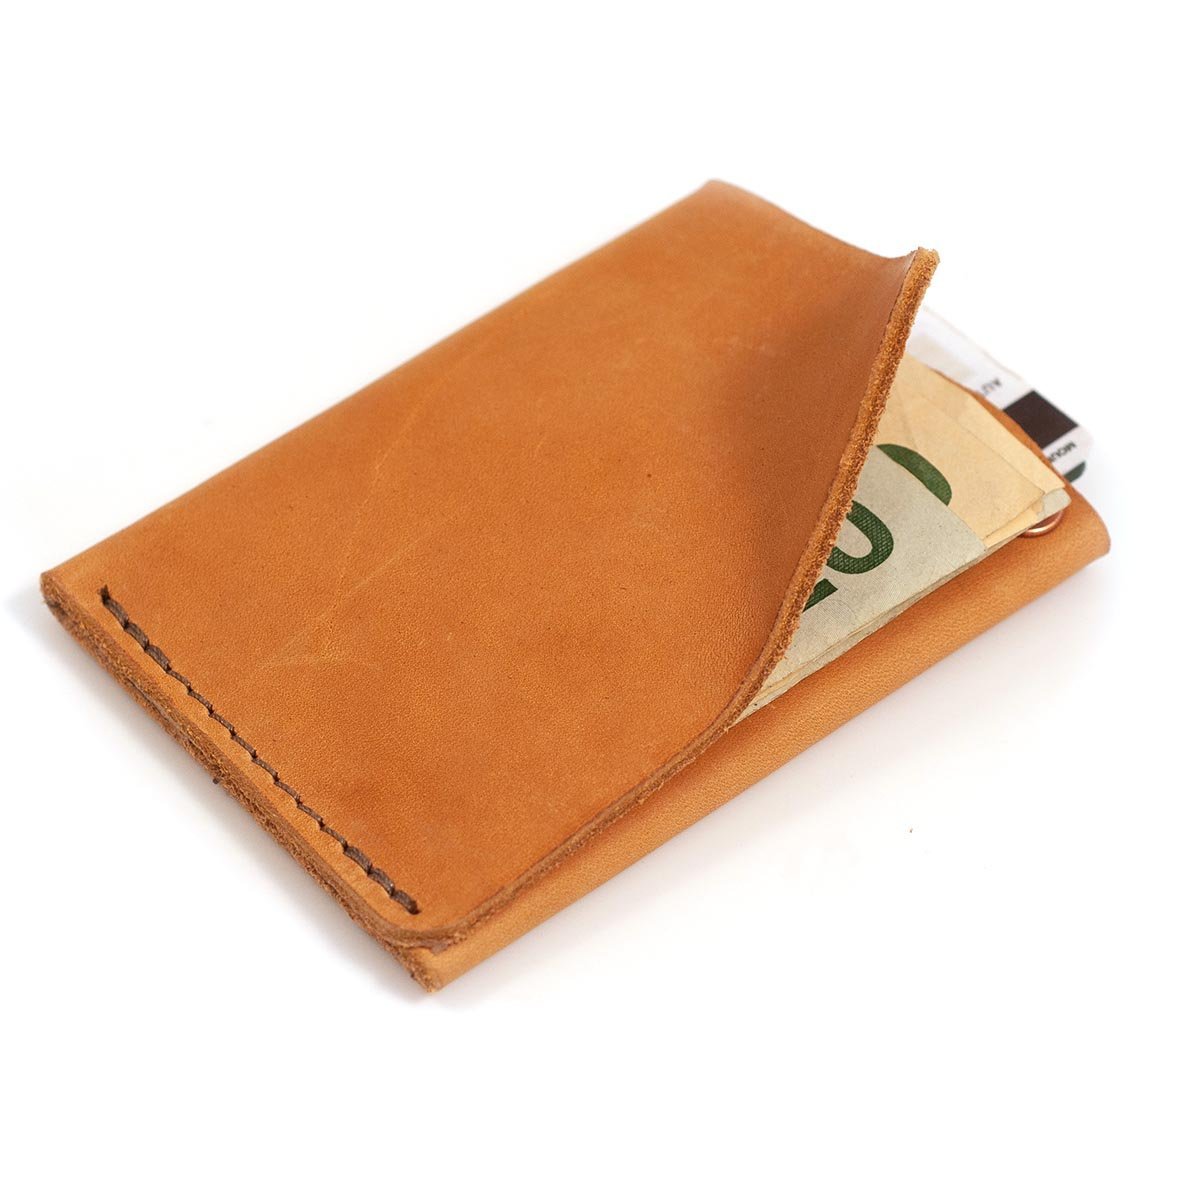 Outline' Wallet - Handmade Leather Wallet (Olive / Orange)